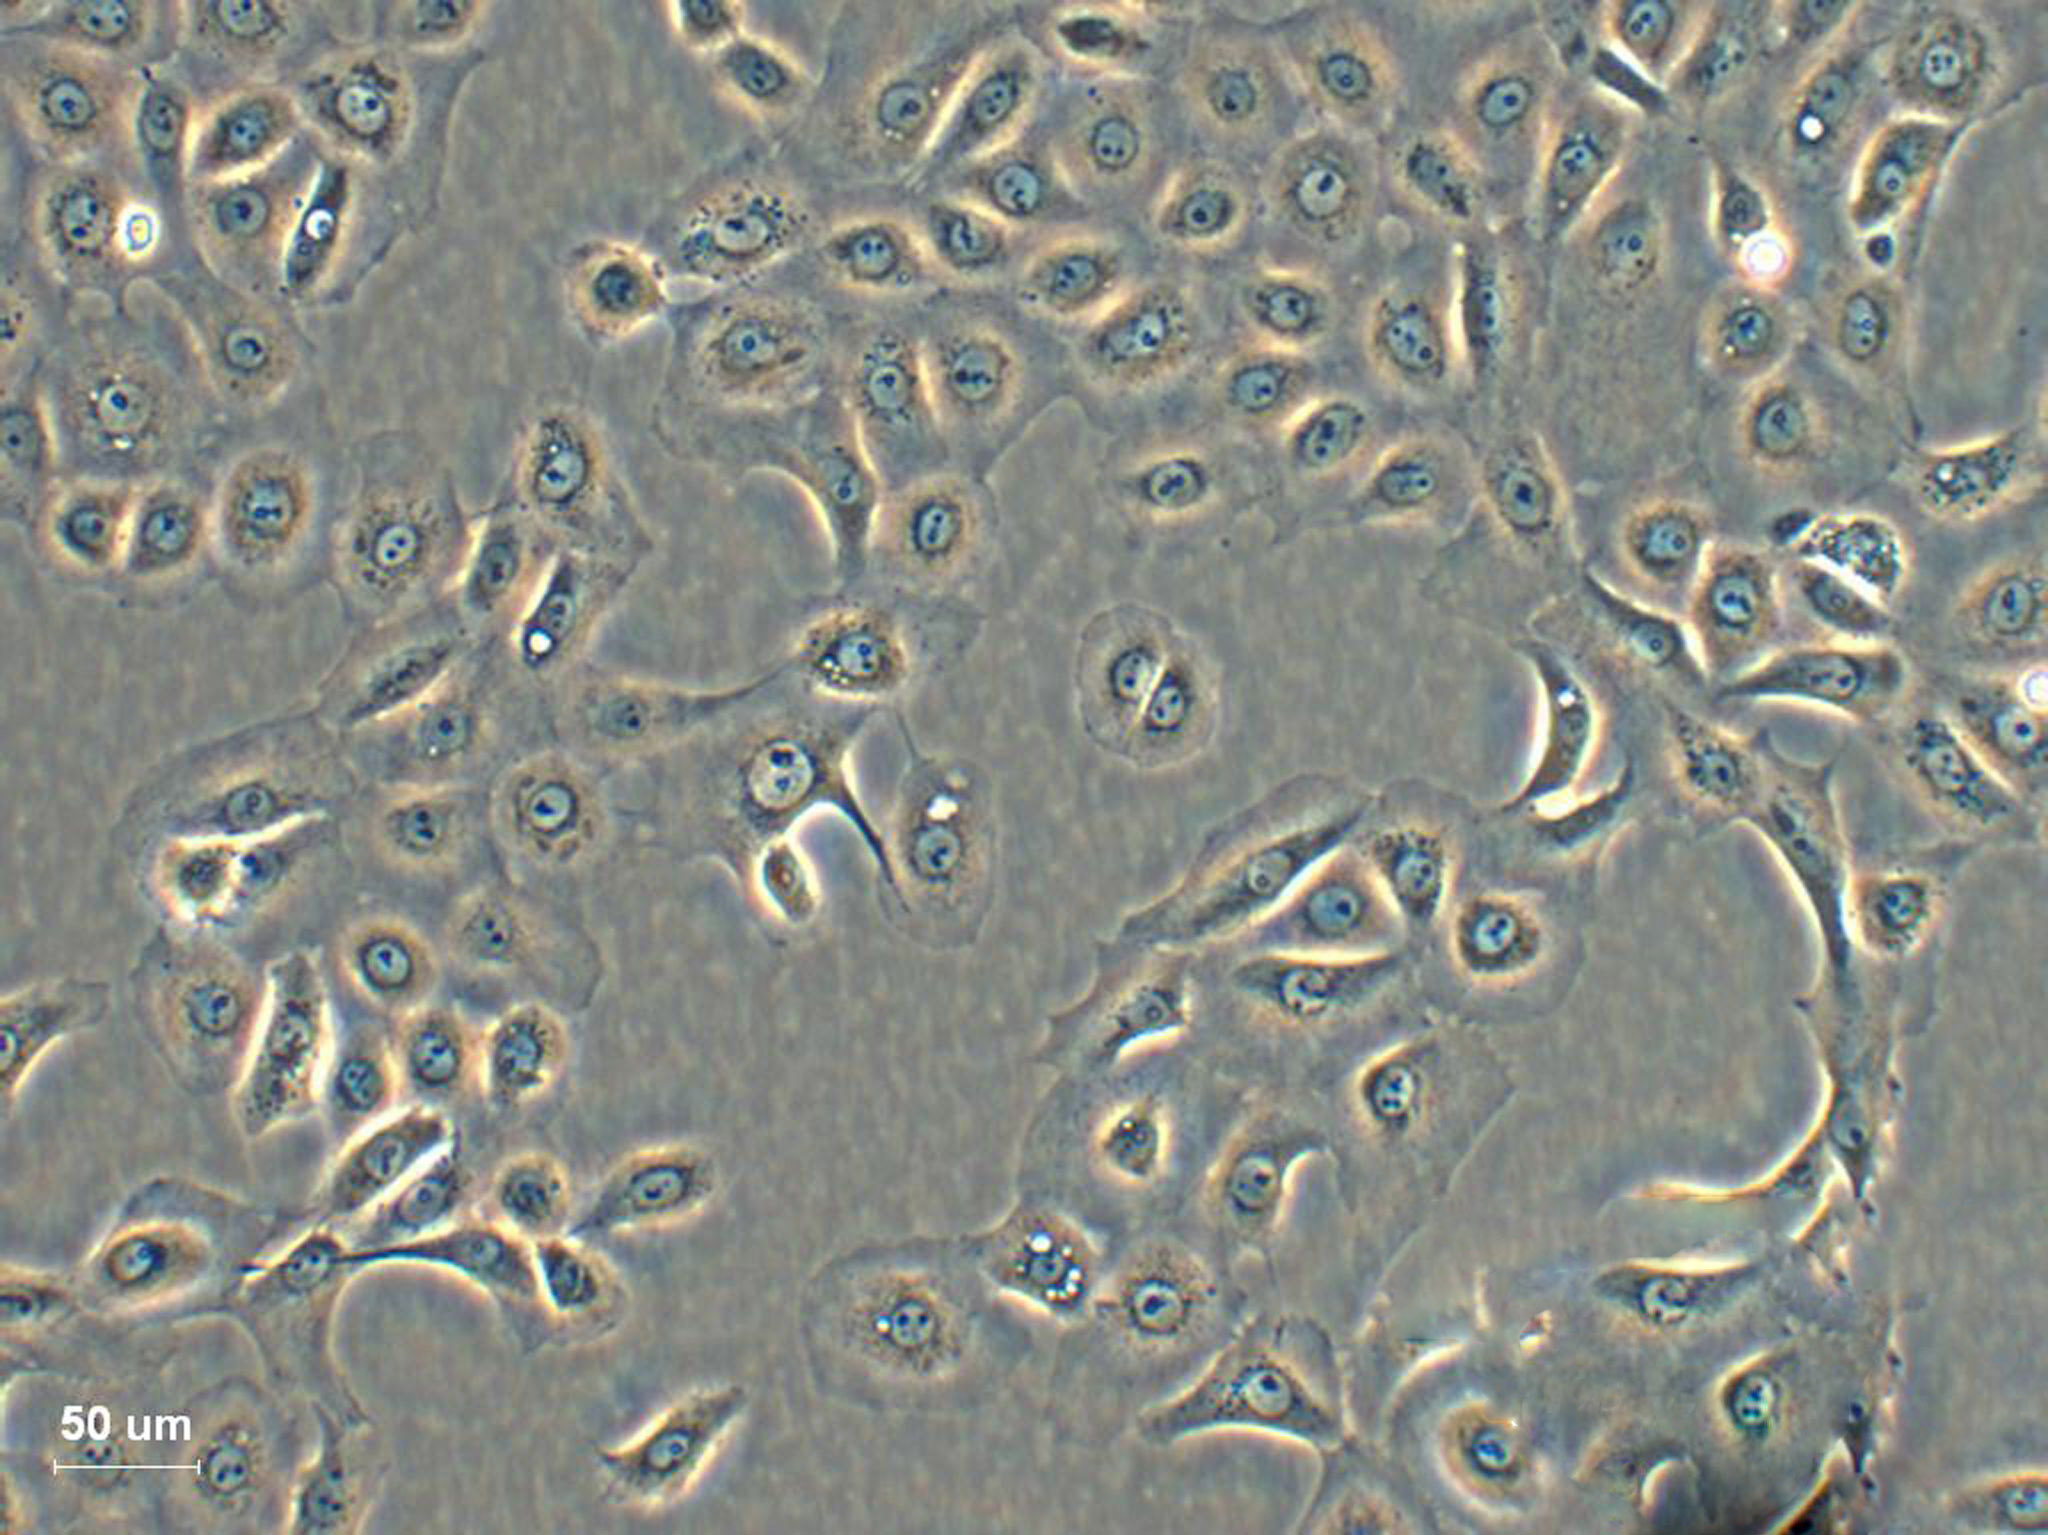 LLC-PK1 Epithelial Cell|猪肾传代细胞(有STR鉴定),LLC-PK1 Epithelial Cell